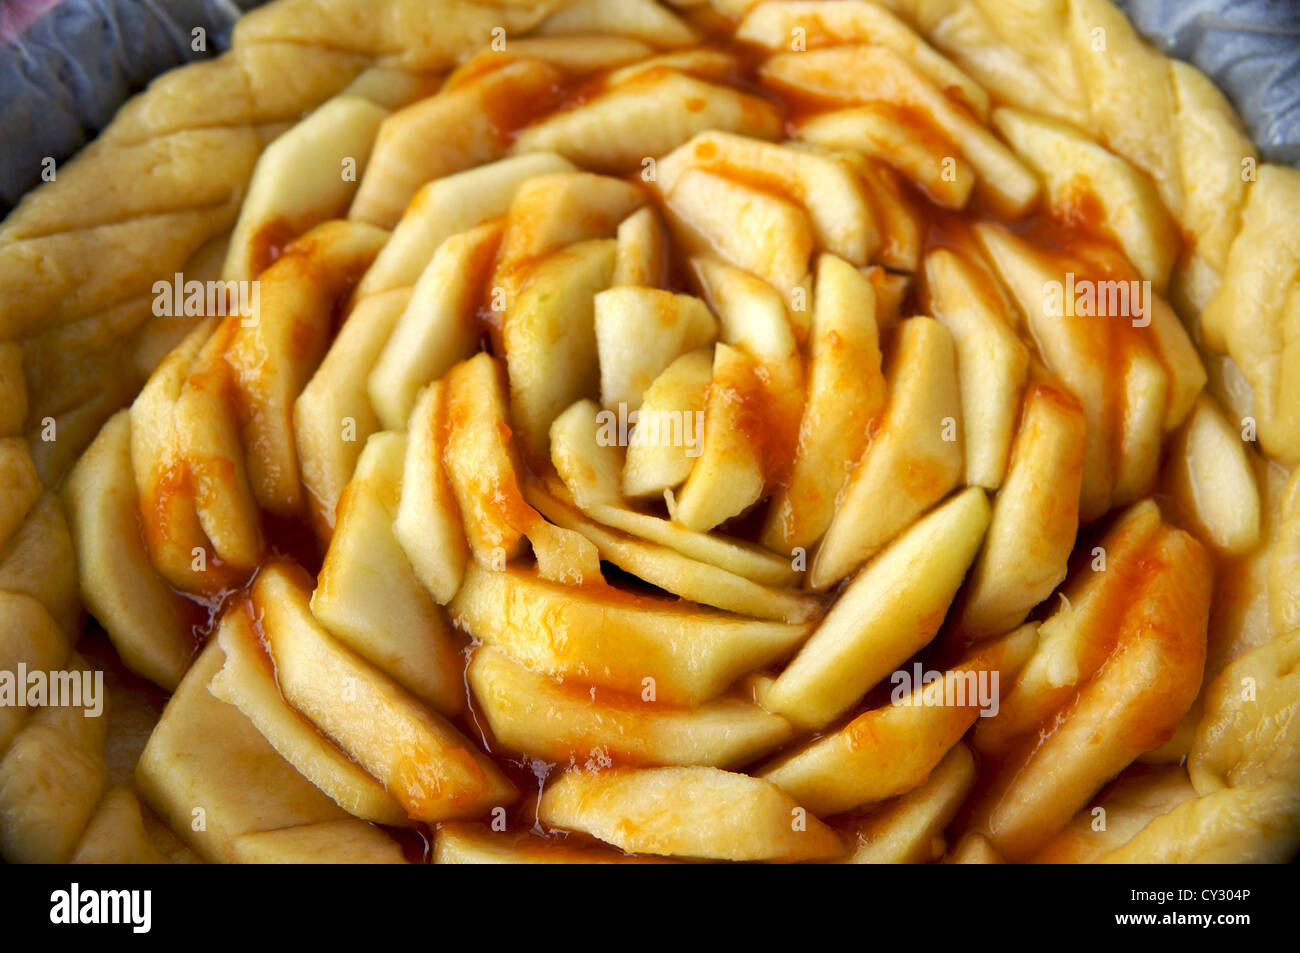 Vue rapprochée d'une tarte aux pommes avec des tranches de fruits et de confiture Banque D'Images